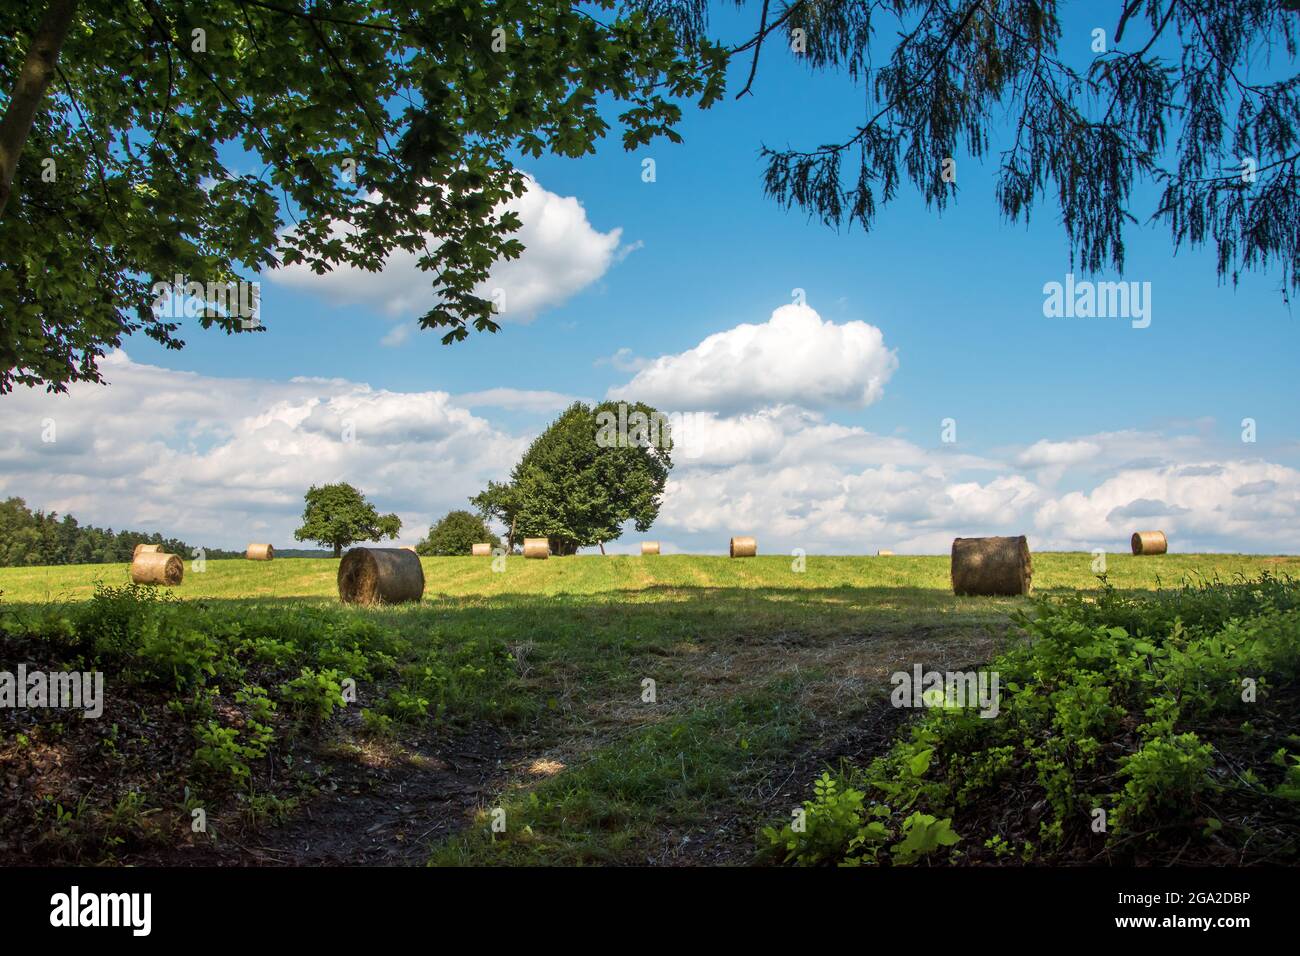 Landwirtschaftliche Feld im Sommer. Auf einer Wiese liegen getrocknete Heuballen. Baumzweige im Vordergrund. Bäume und blauer, wolkig Himmel im Hintergrund. Stockfoto